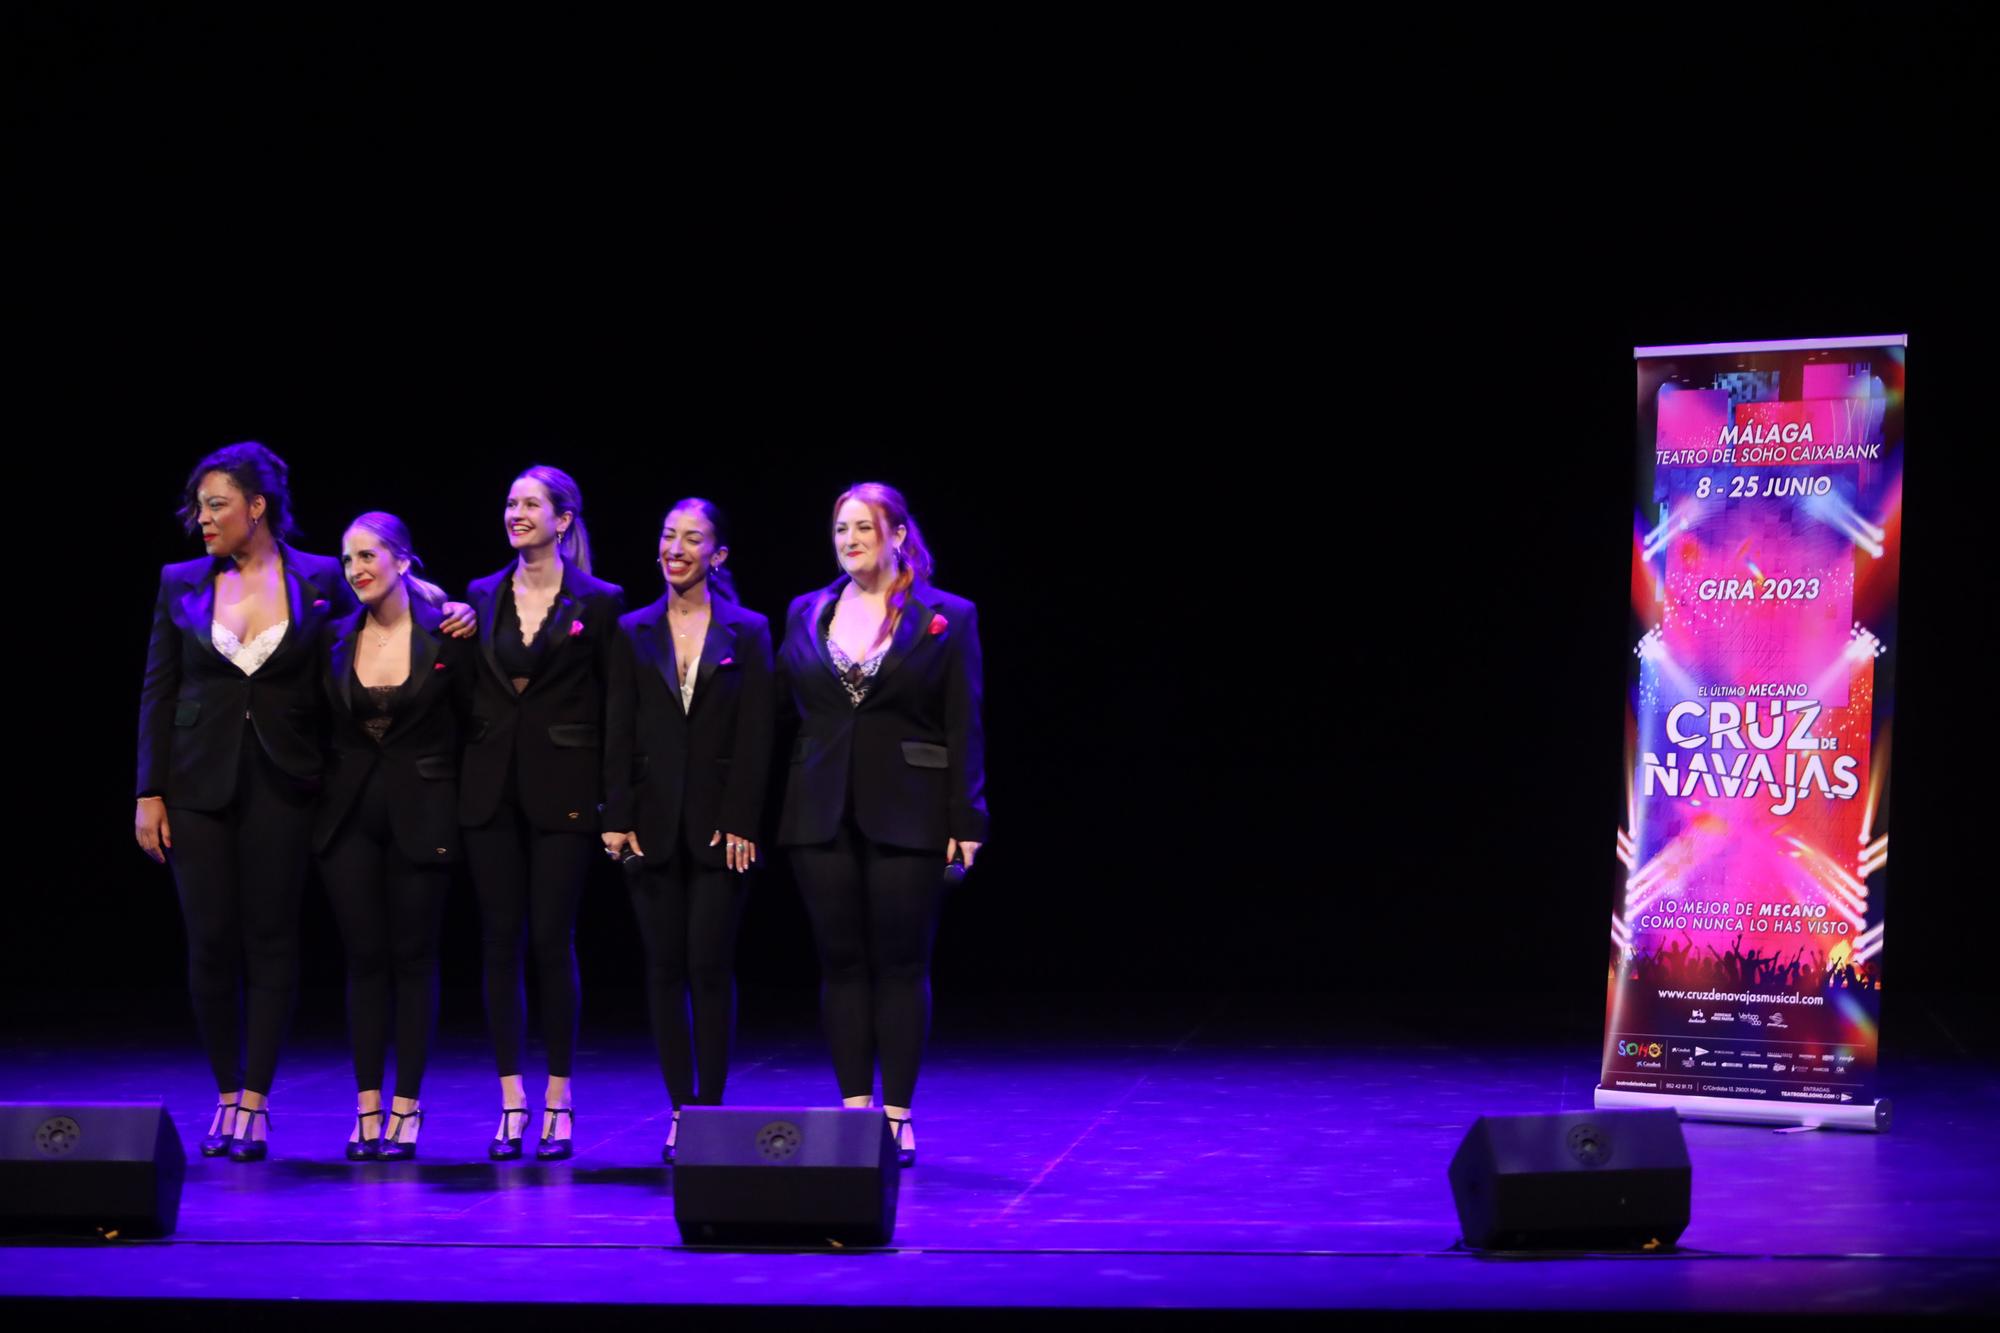 Presentación del musical 'Cruz de Navajas' en el Teatro del Soho